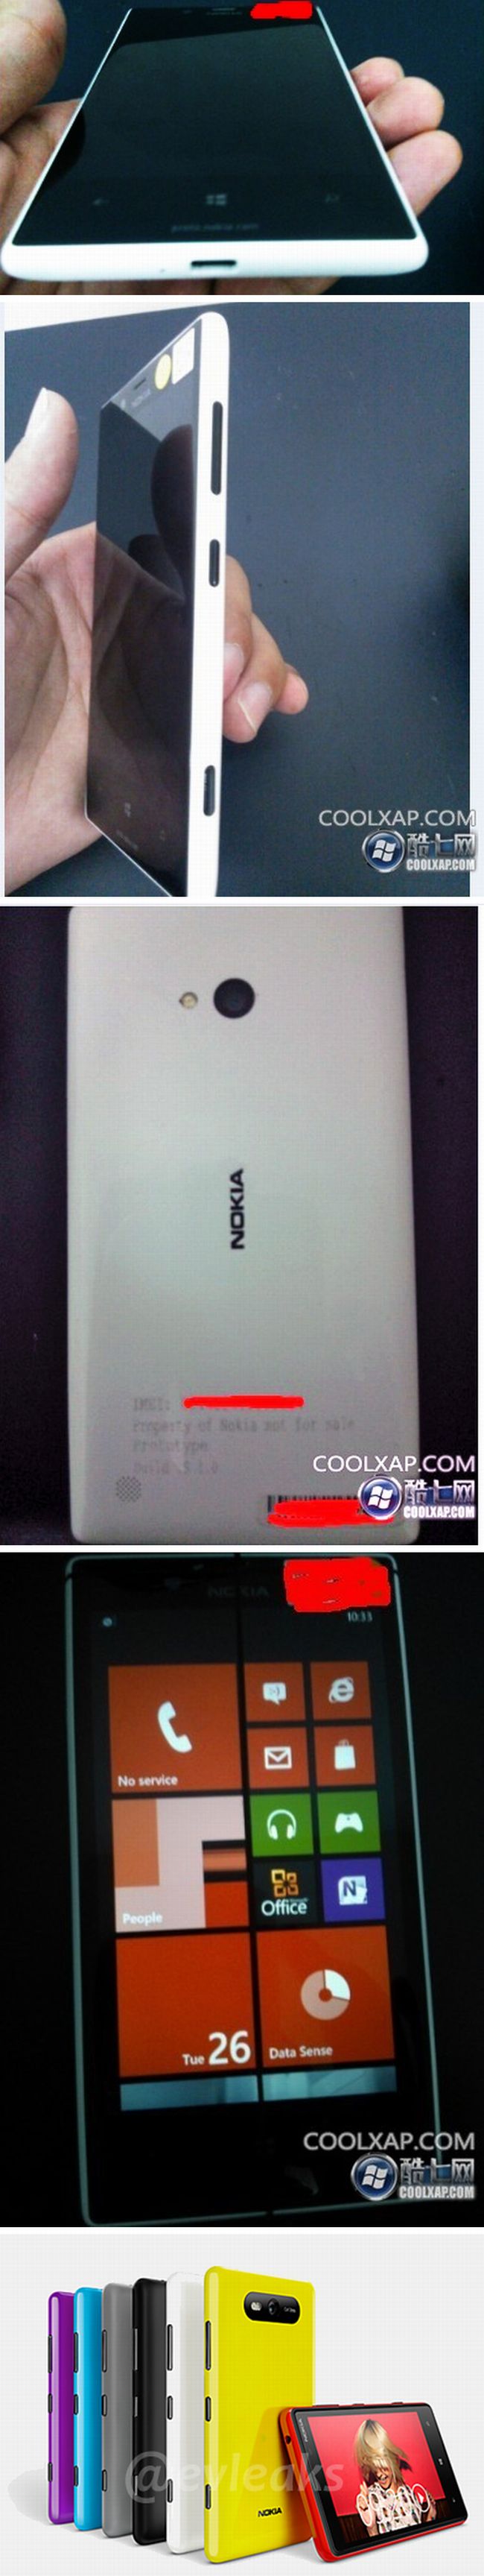 Újabb képeken a Nokia Lumia 820